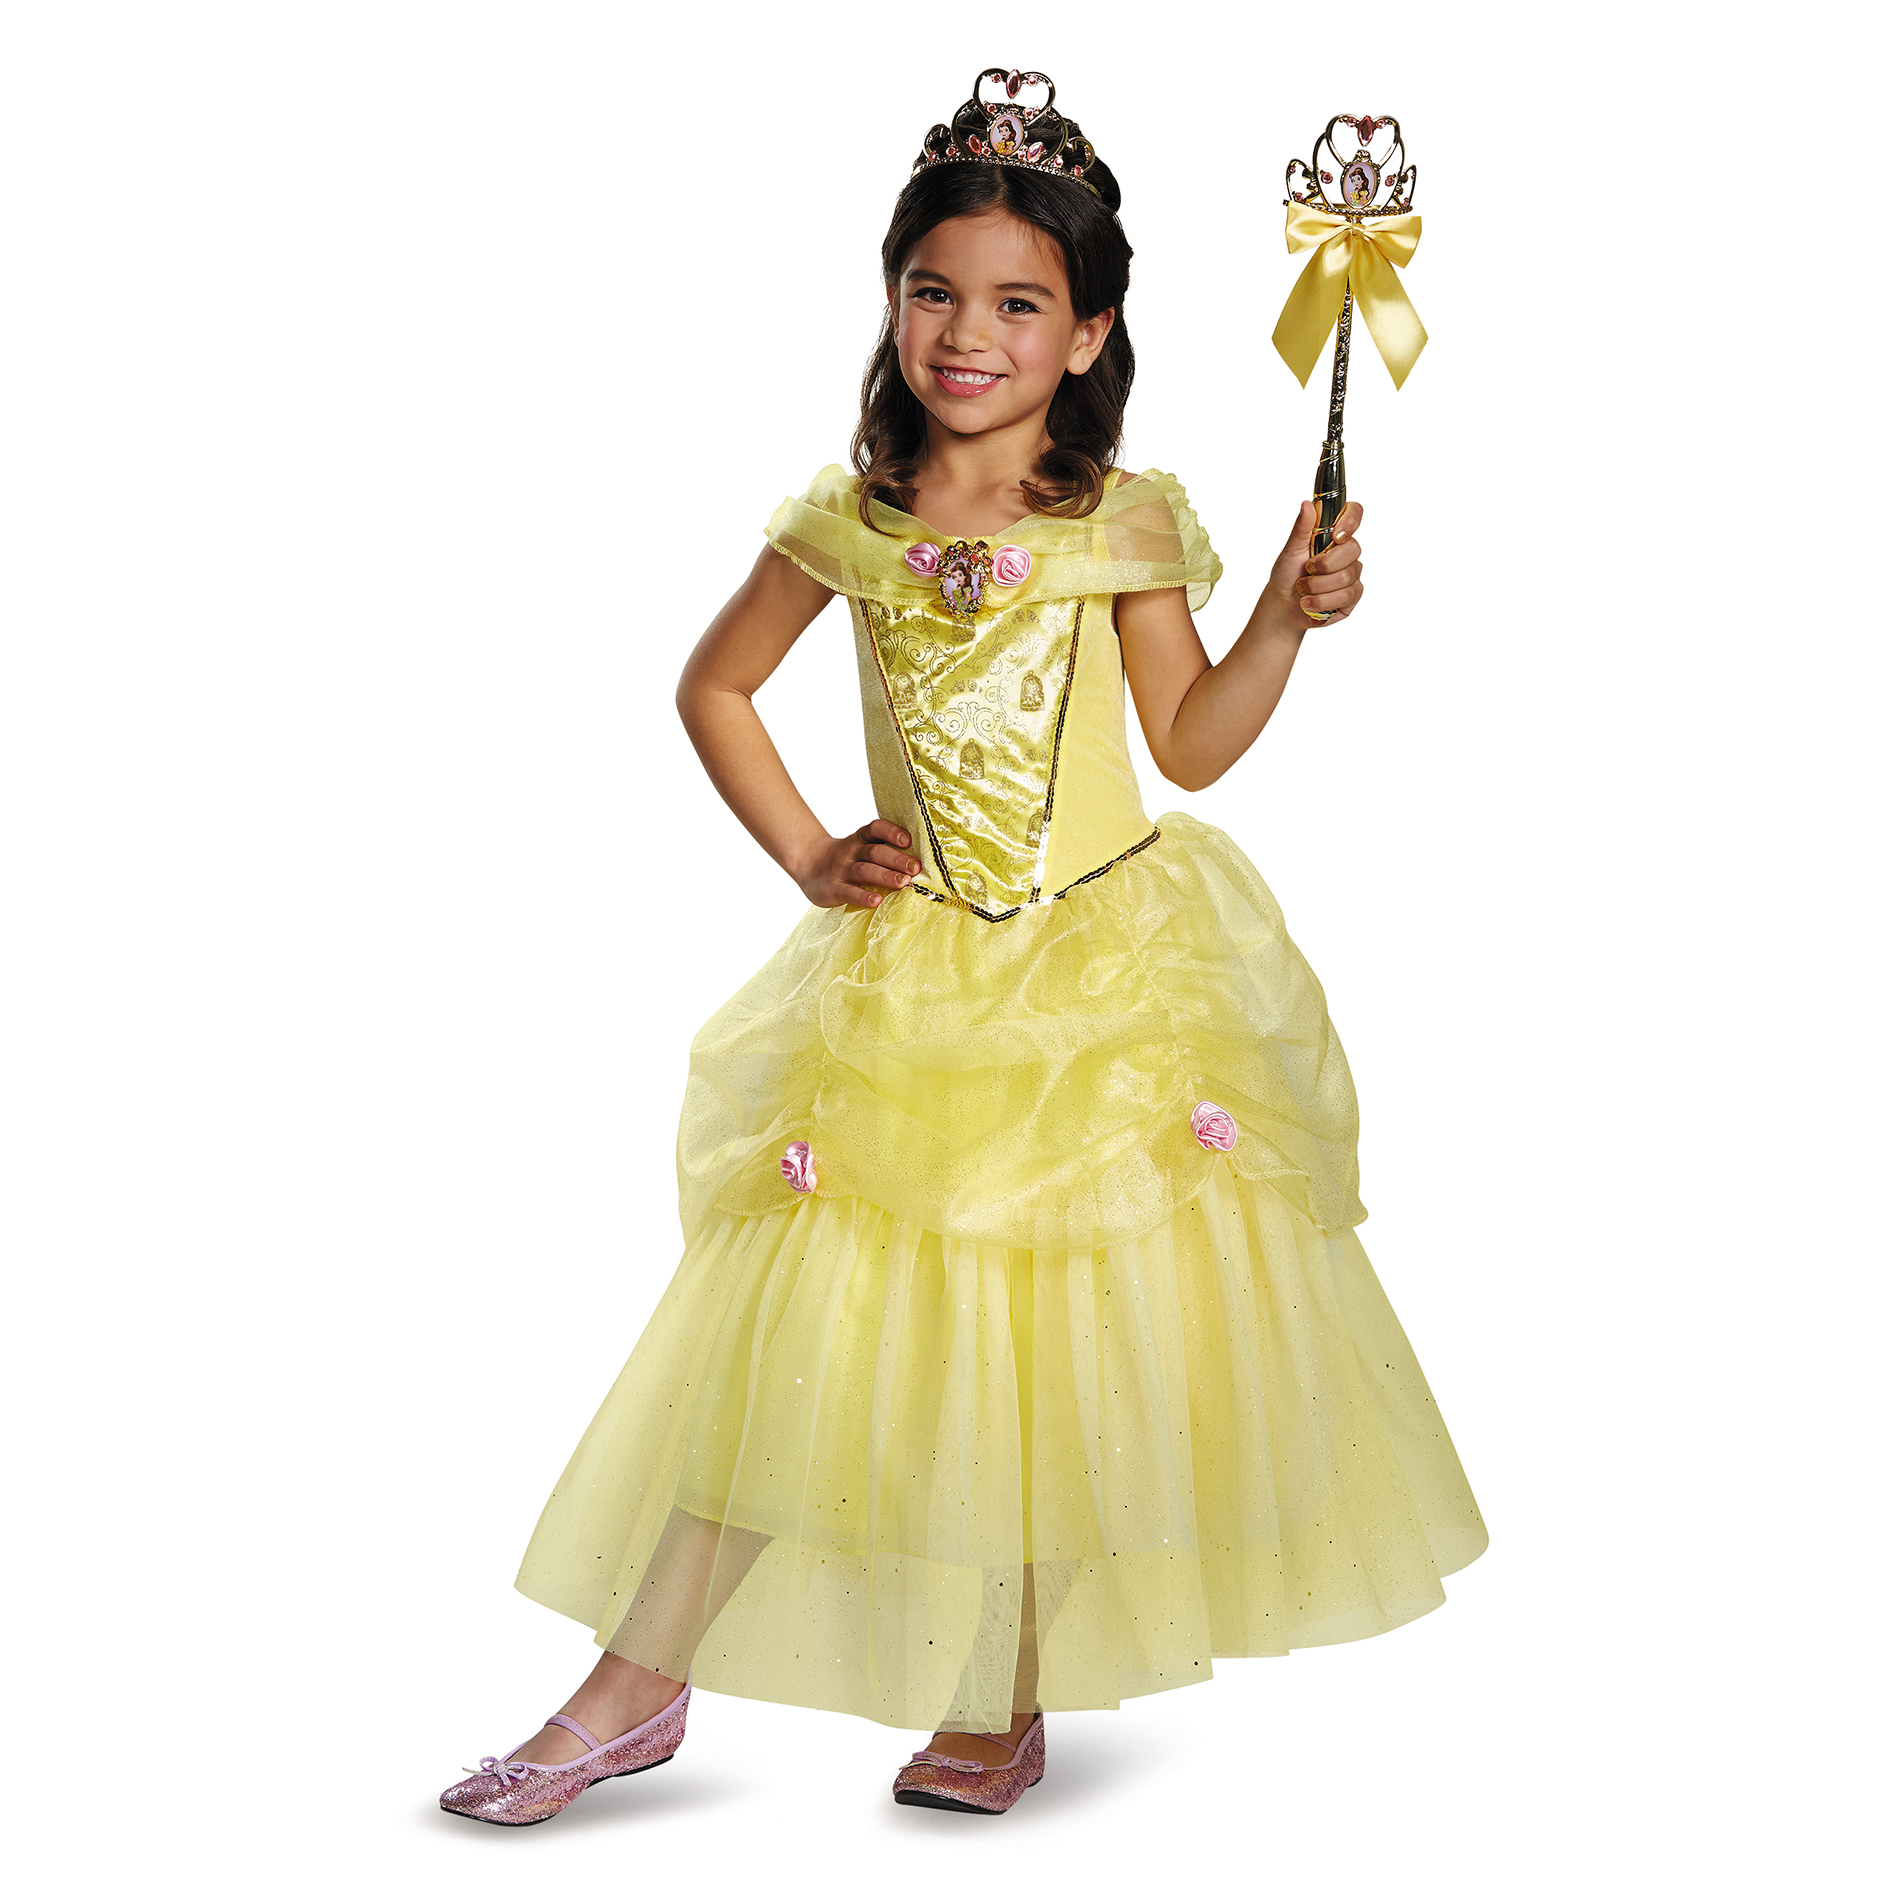 Disney 's Belle Halloween Costume